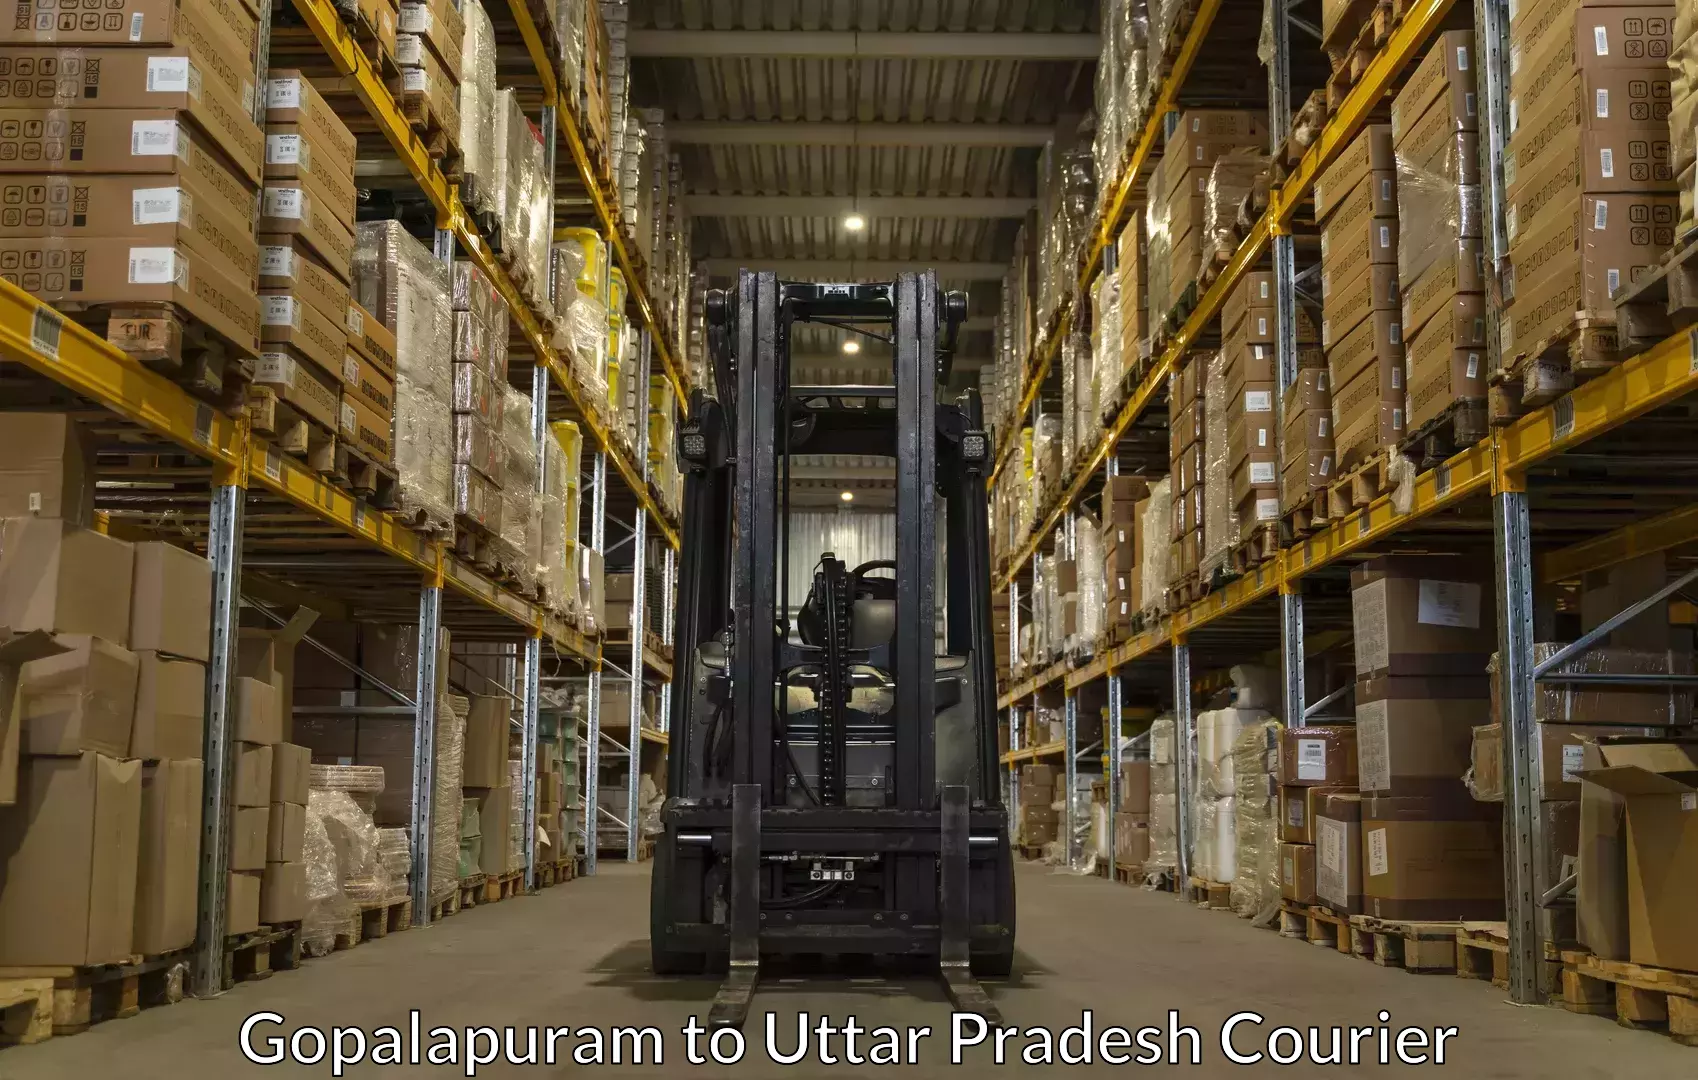 Specialized moving company Gopalapuram to Varanasi